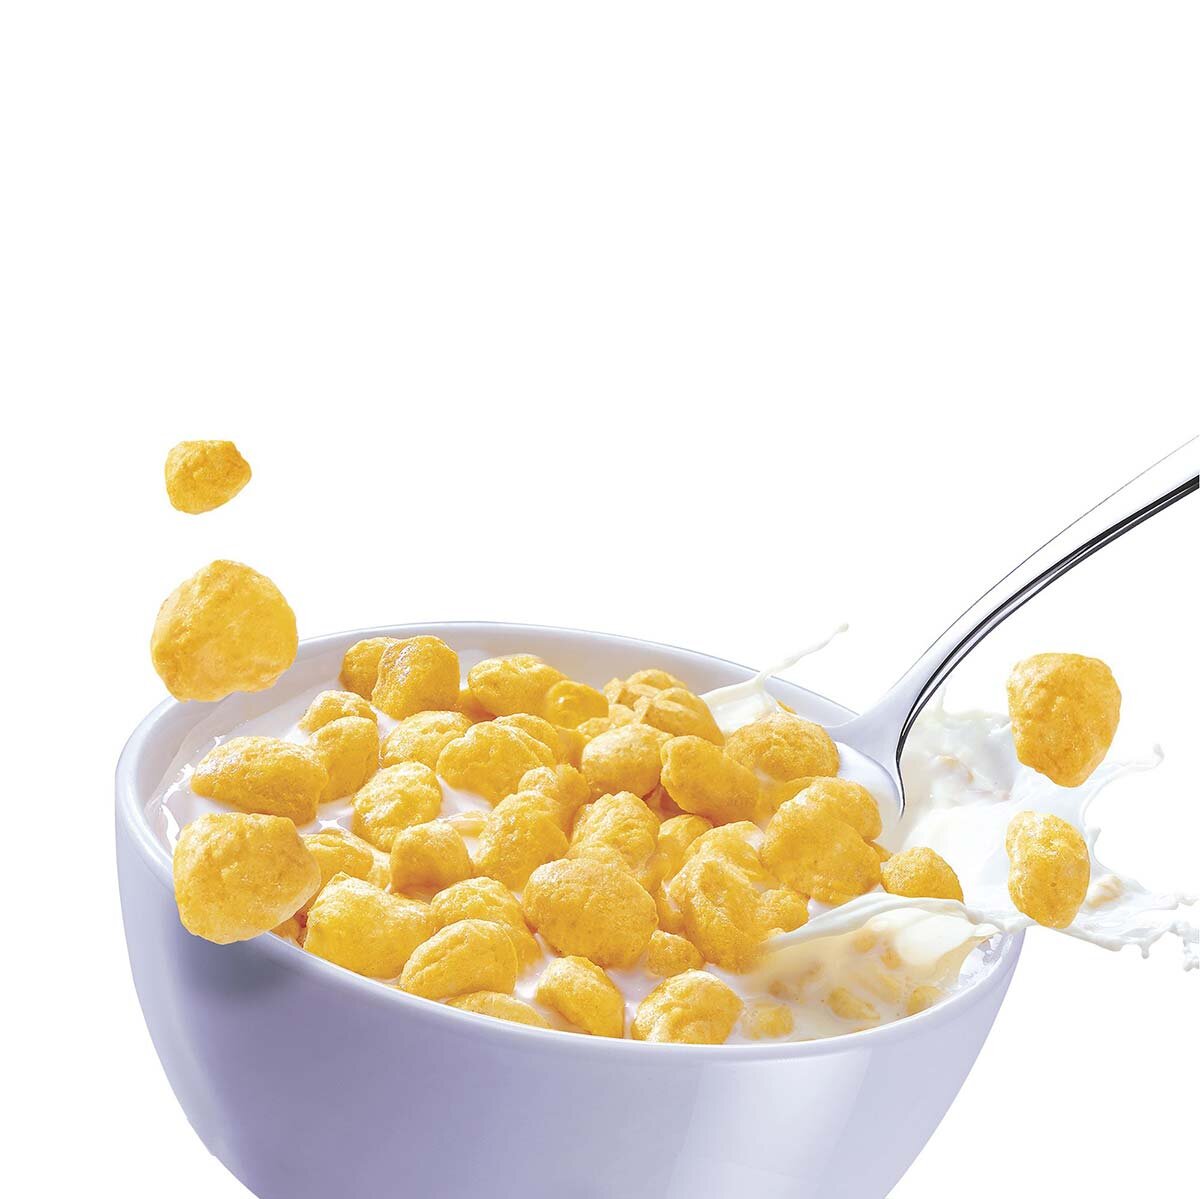  Corn Pops Cereal 940 g